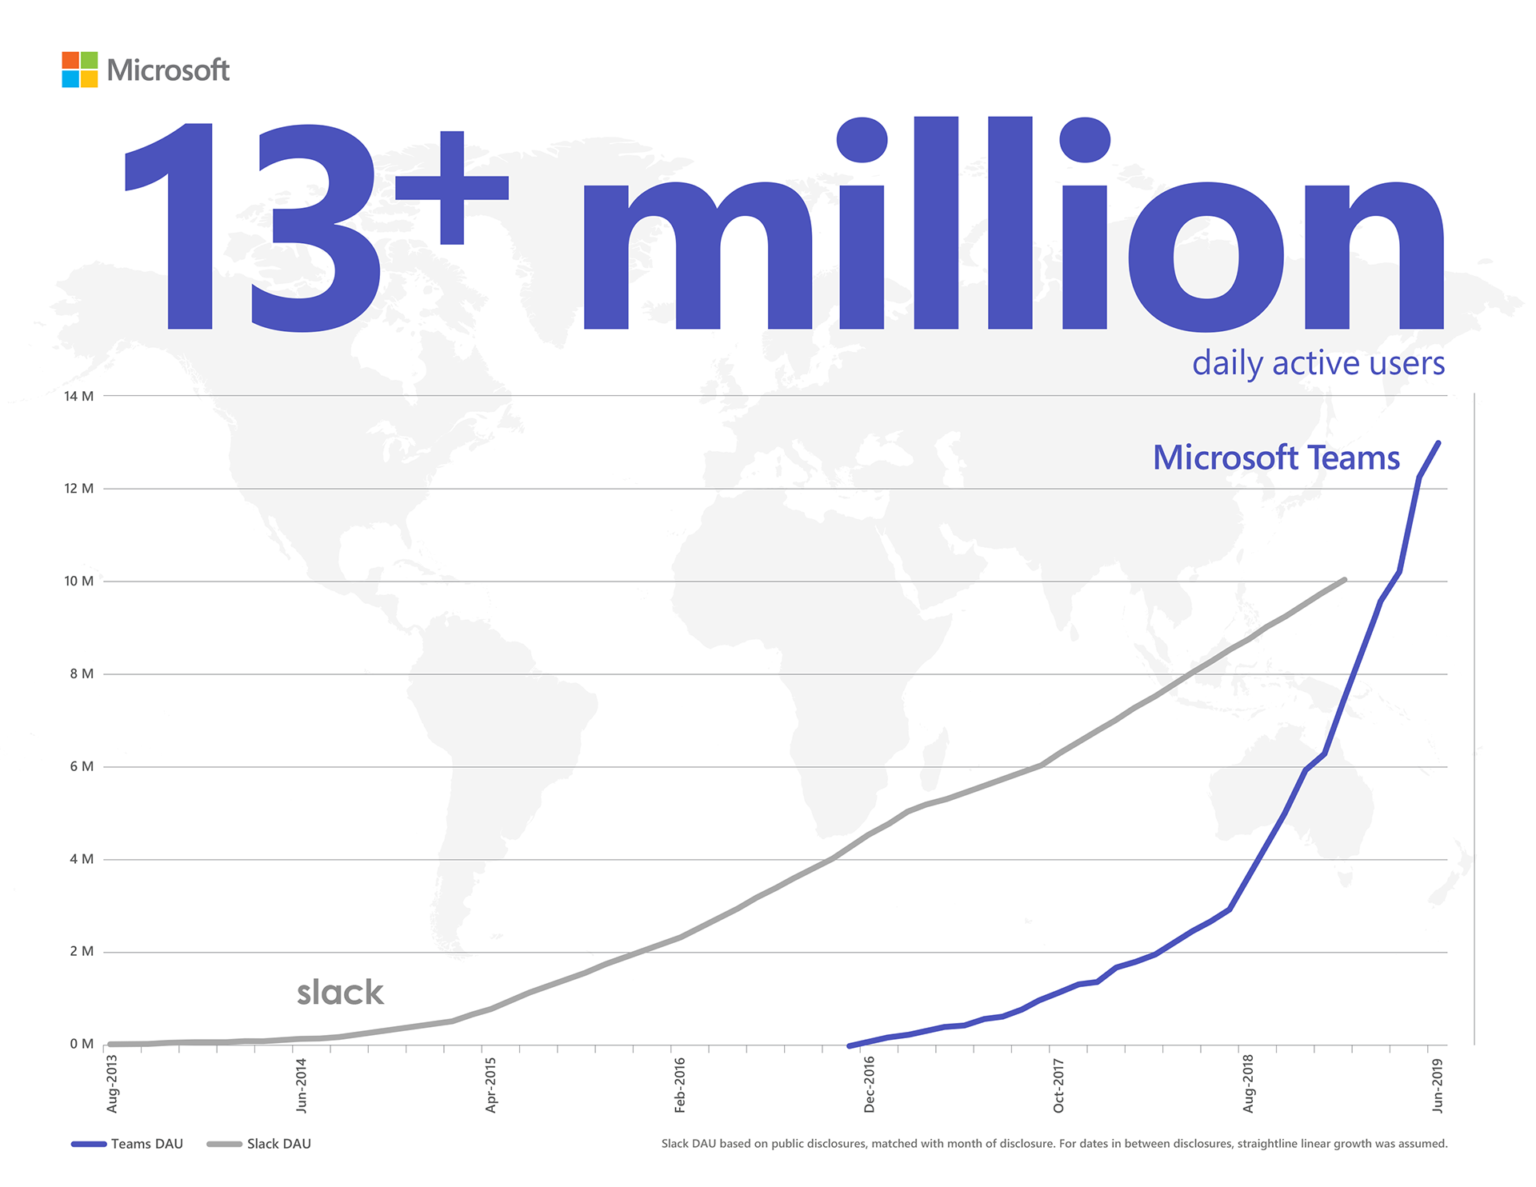 Microsoft Teams の 1 日のアクティブ ユーザー数が 1,300 万人を超え、Slack を上回ったことを示すインフォグラフィック。公表された Slack の DAU はその月の DAU です。公表日から次の公表日までの期間は、横ばいの成長だったと推定されます。